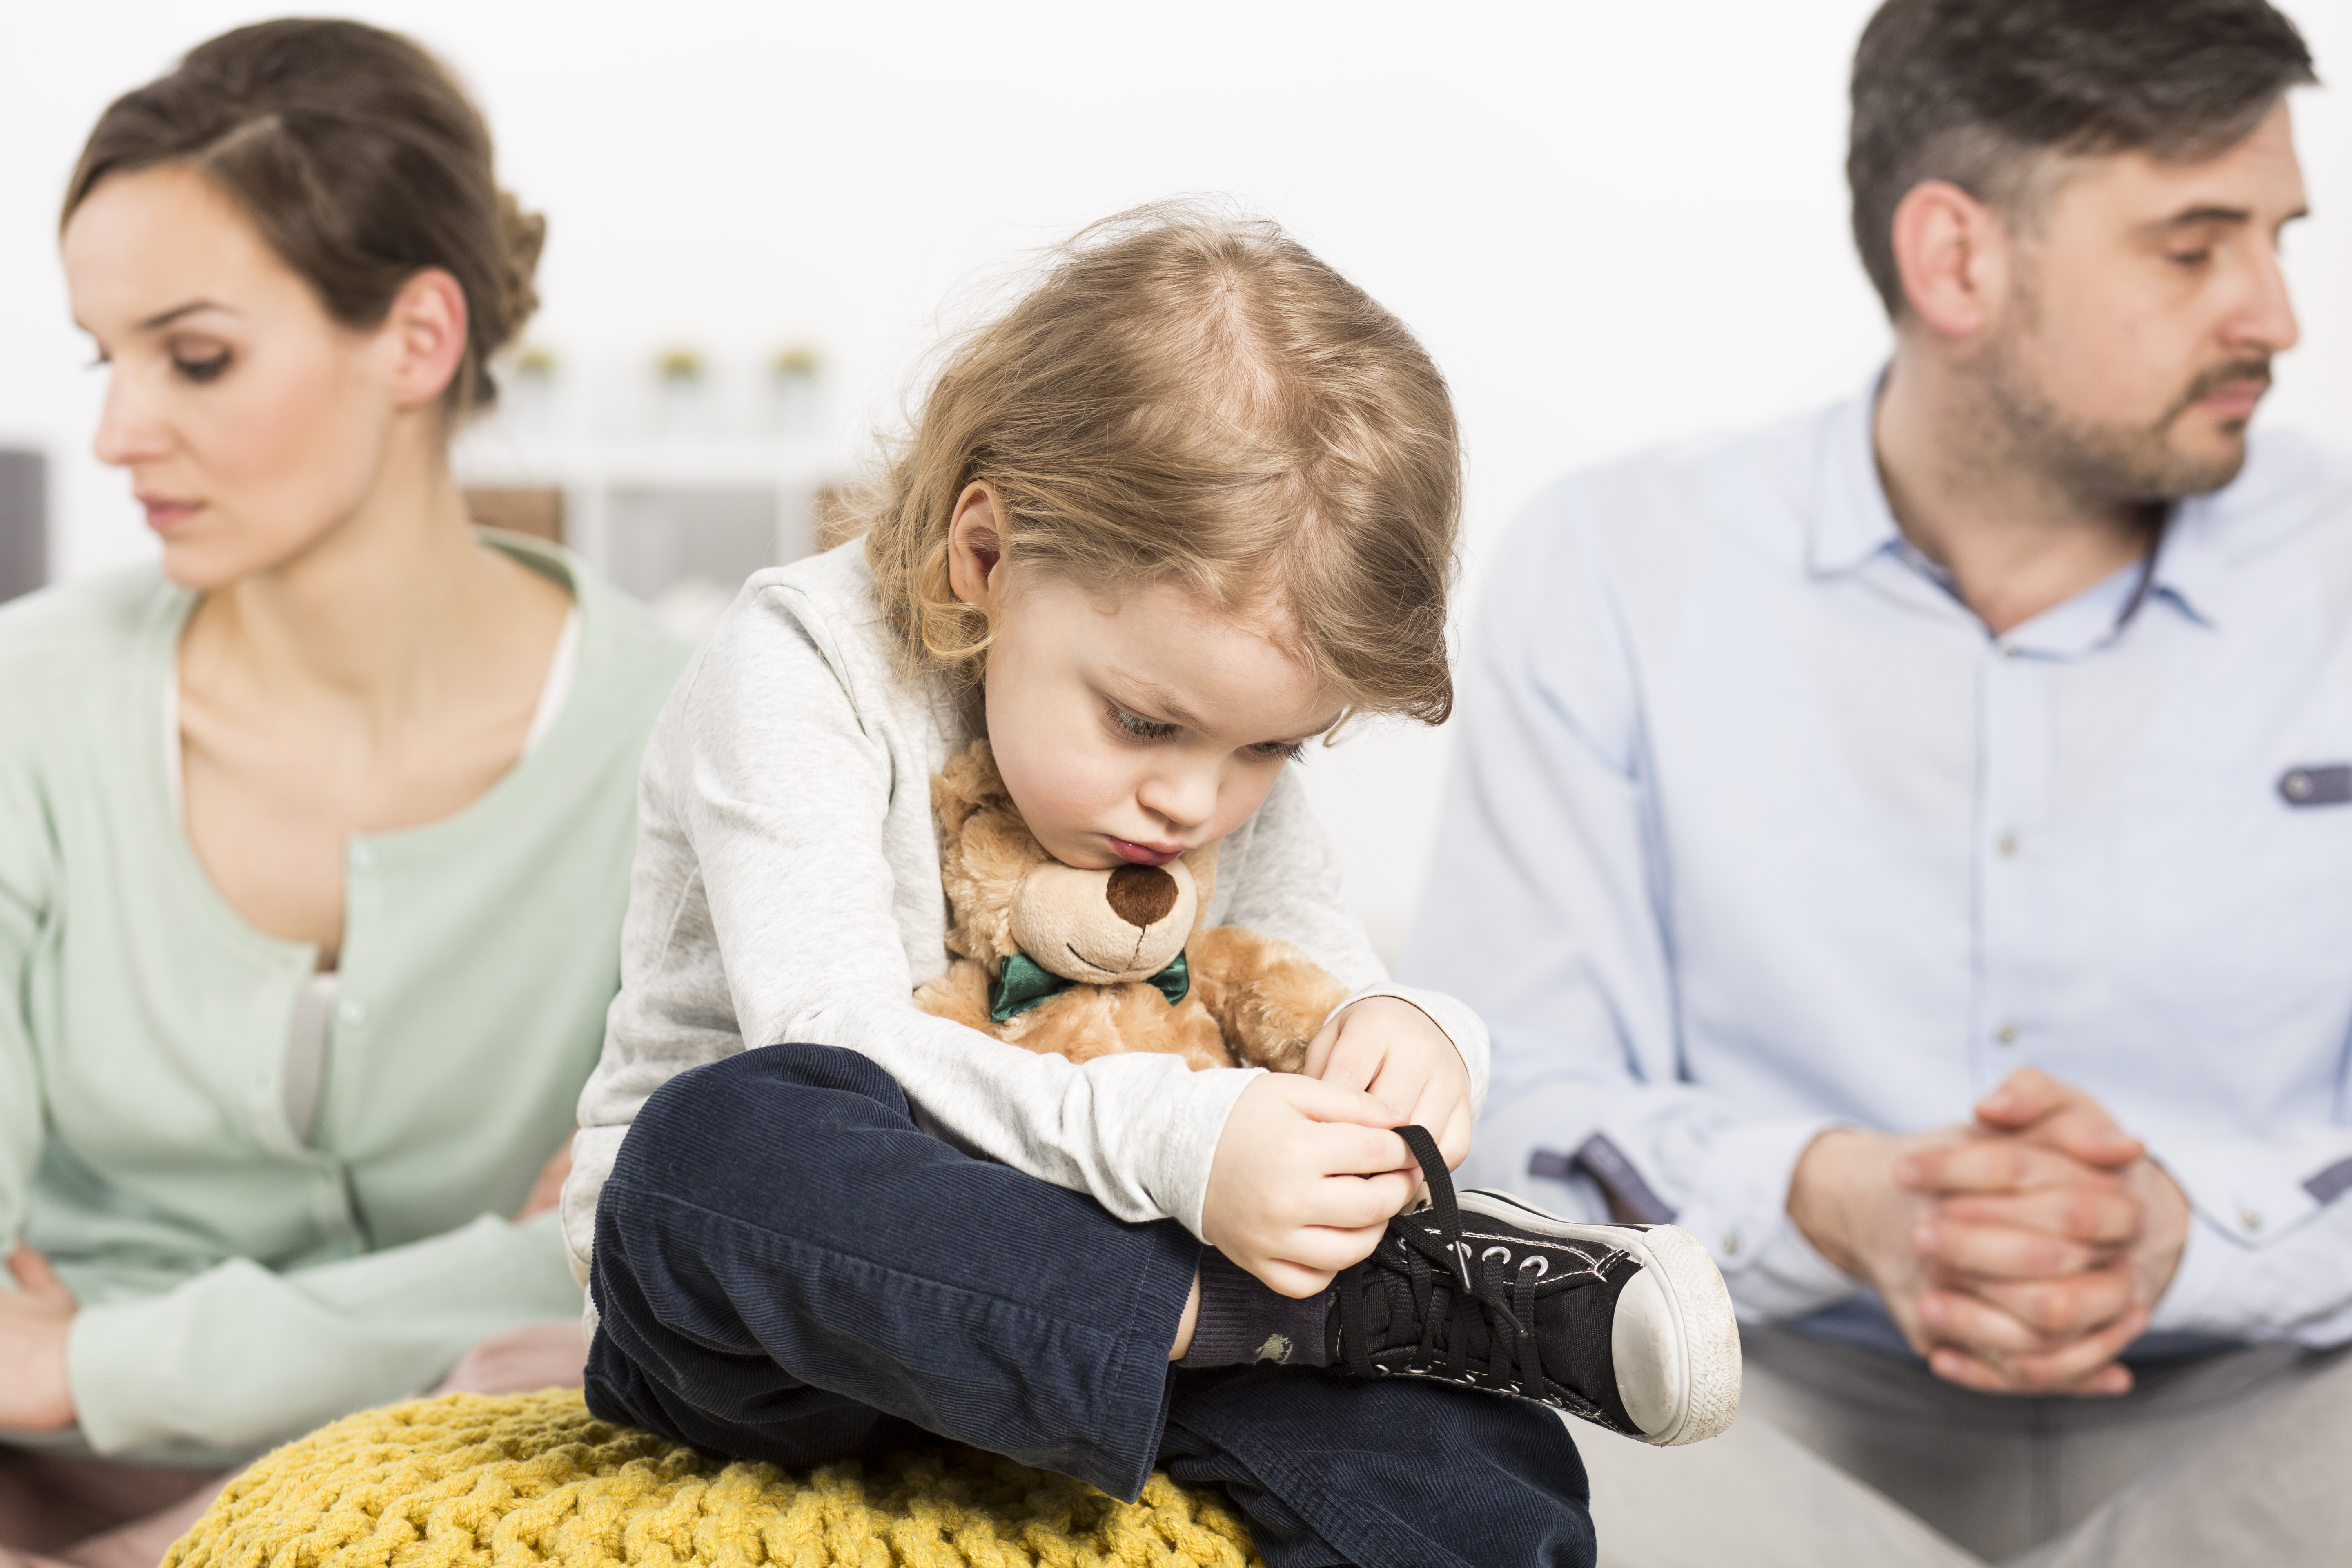 Тревожат ли Вас речевые проблемы ребенка? Консультация для родителей